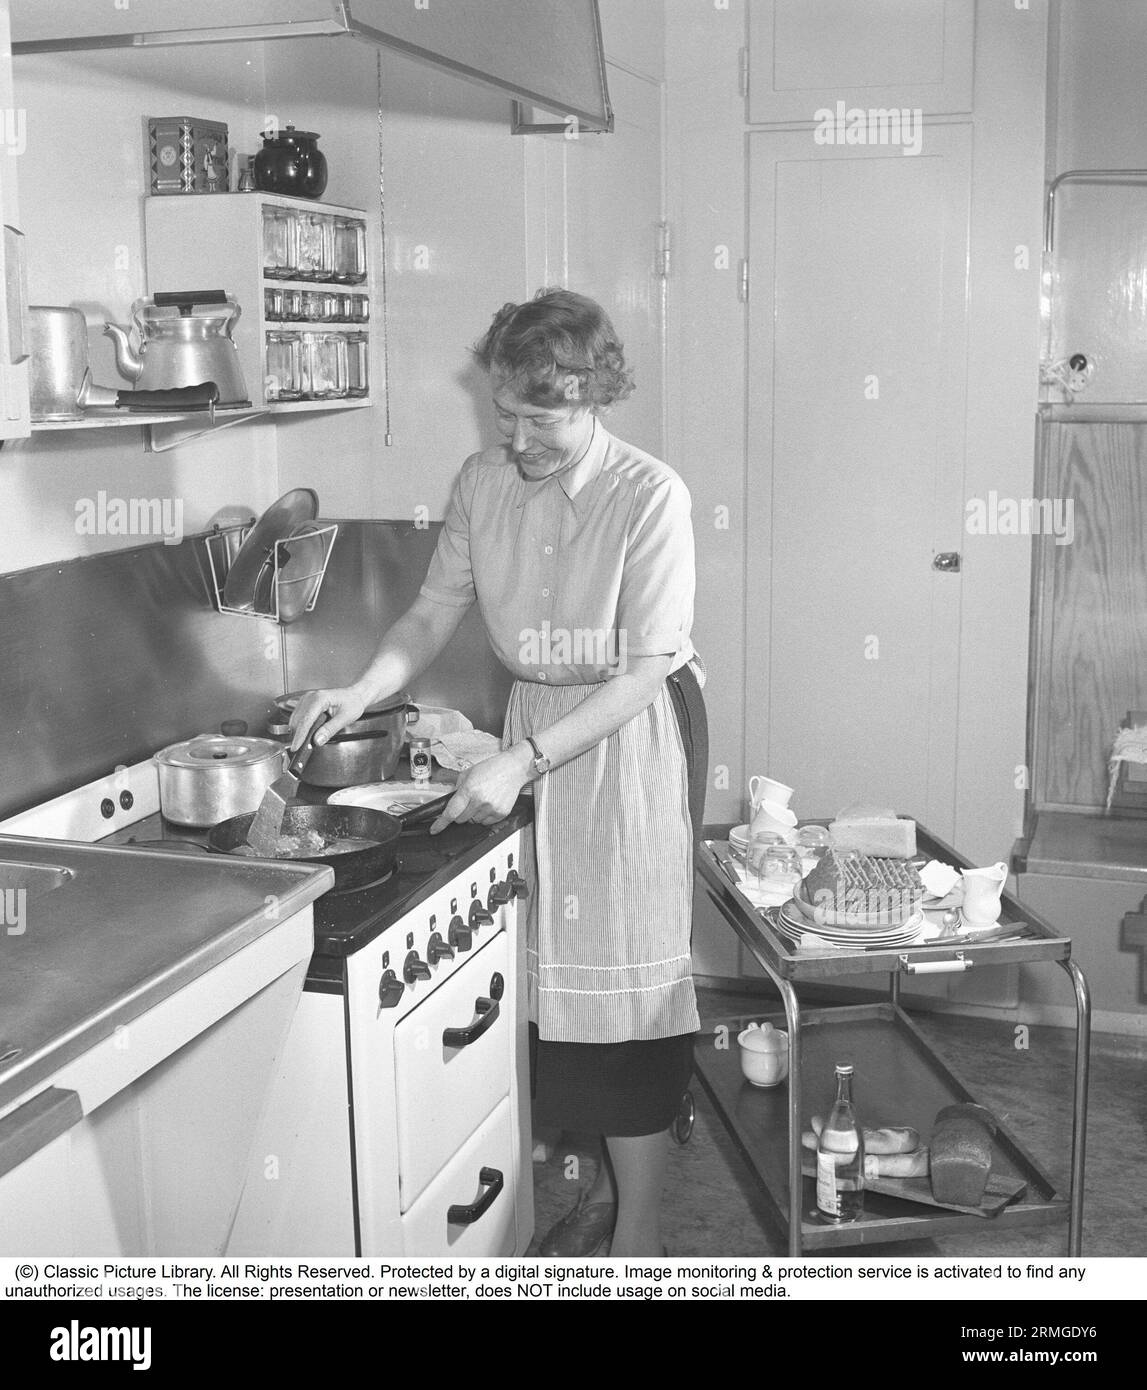 Dans la cuisine 1950s. Intérieur d'une cuisine et une femme debout à la cuisinière de cuisine frire quelque chose dans la poêle. Elle porte un tablier. Suède 1952. Kristoffersson réf. BF82-9 Banque D'Images